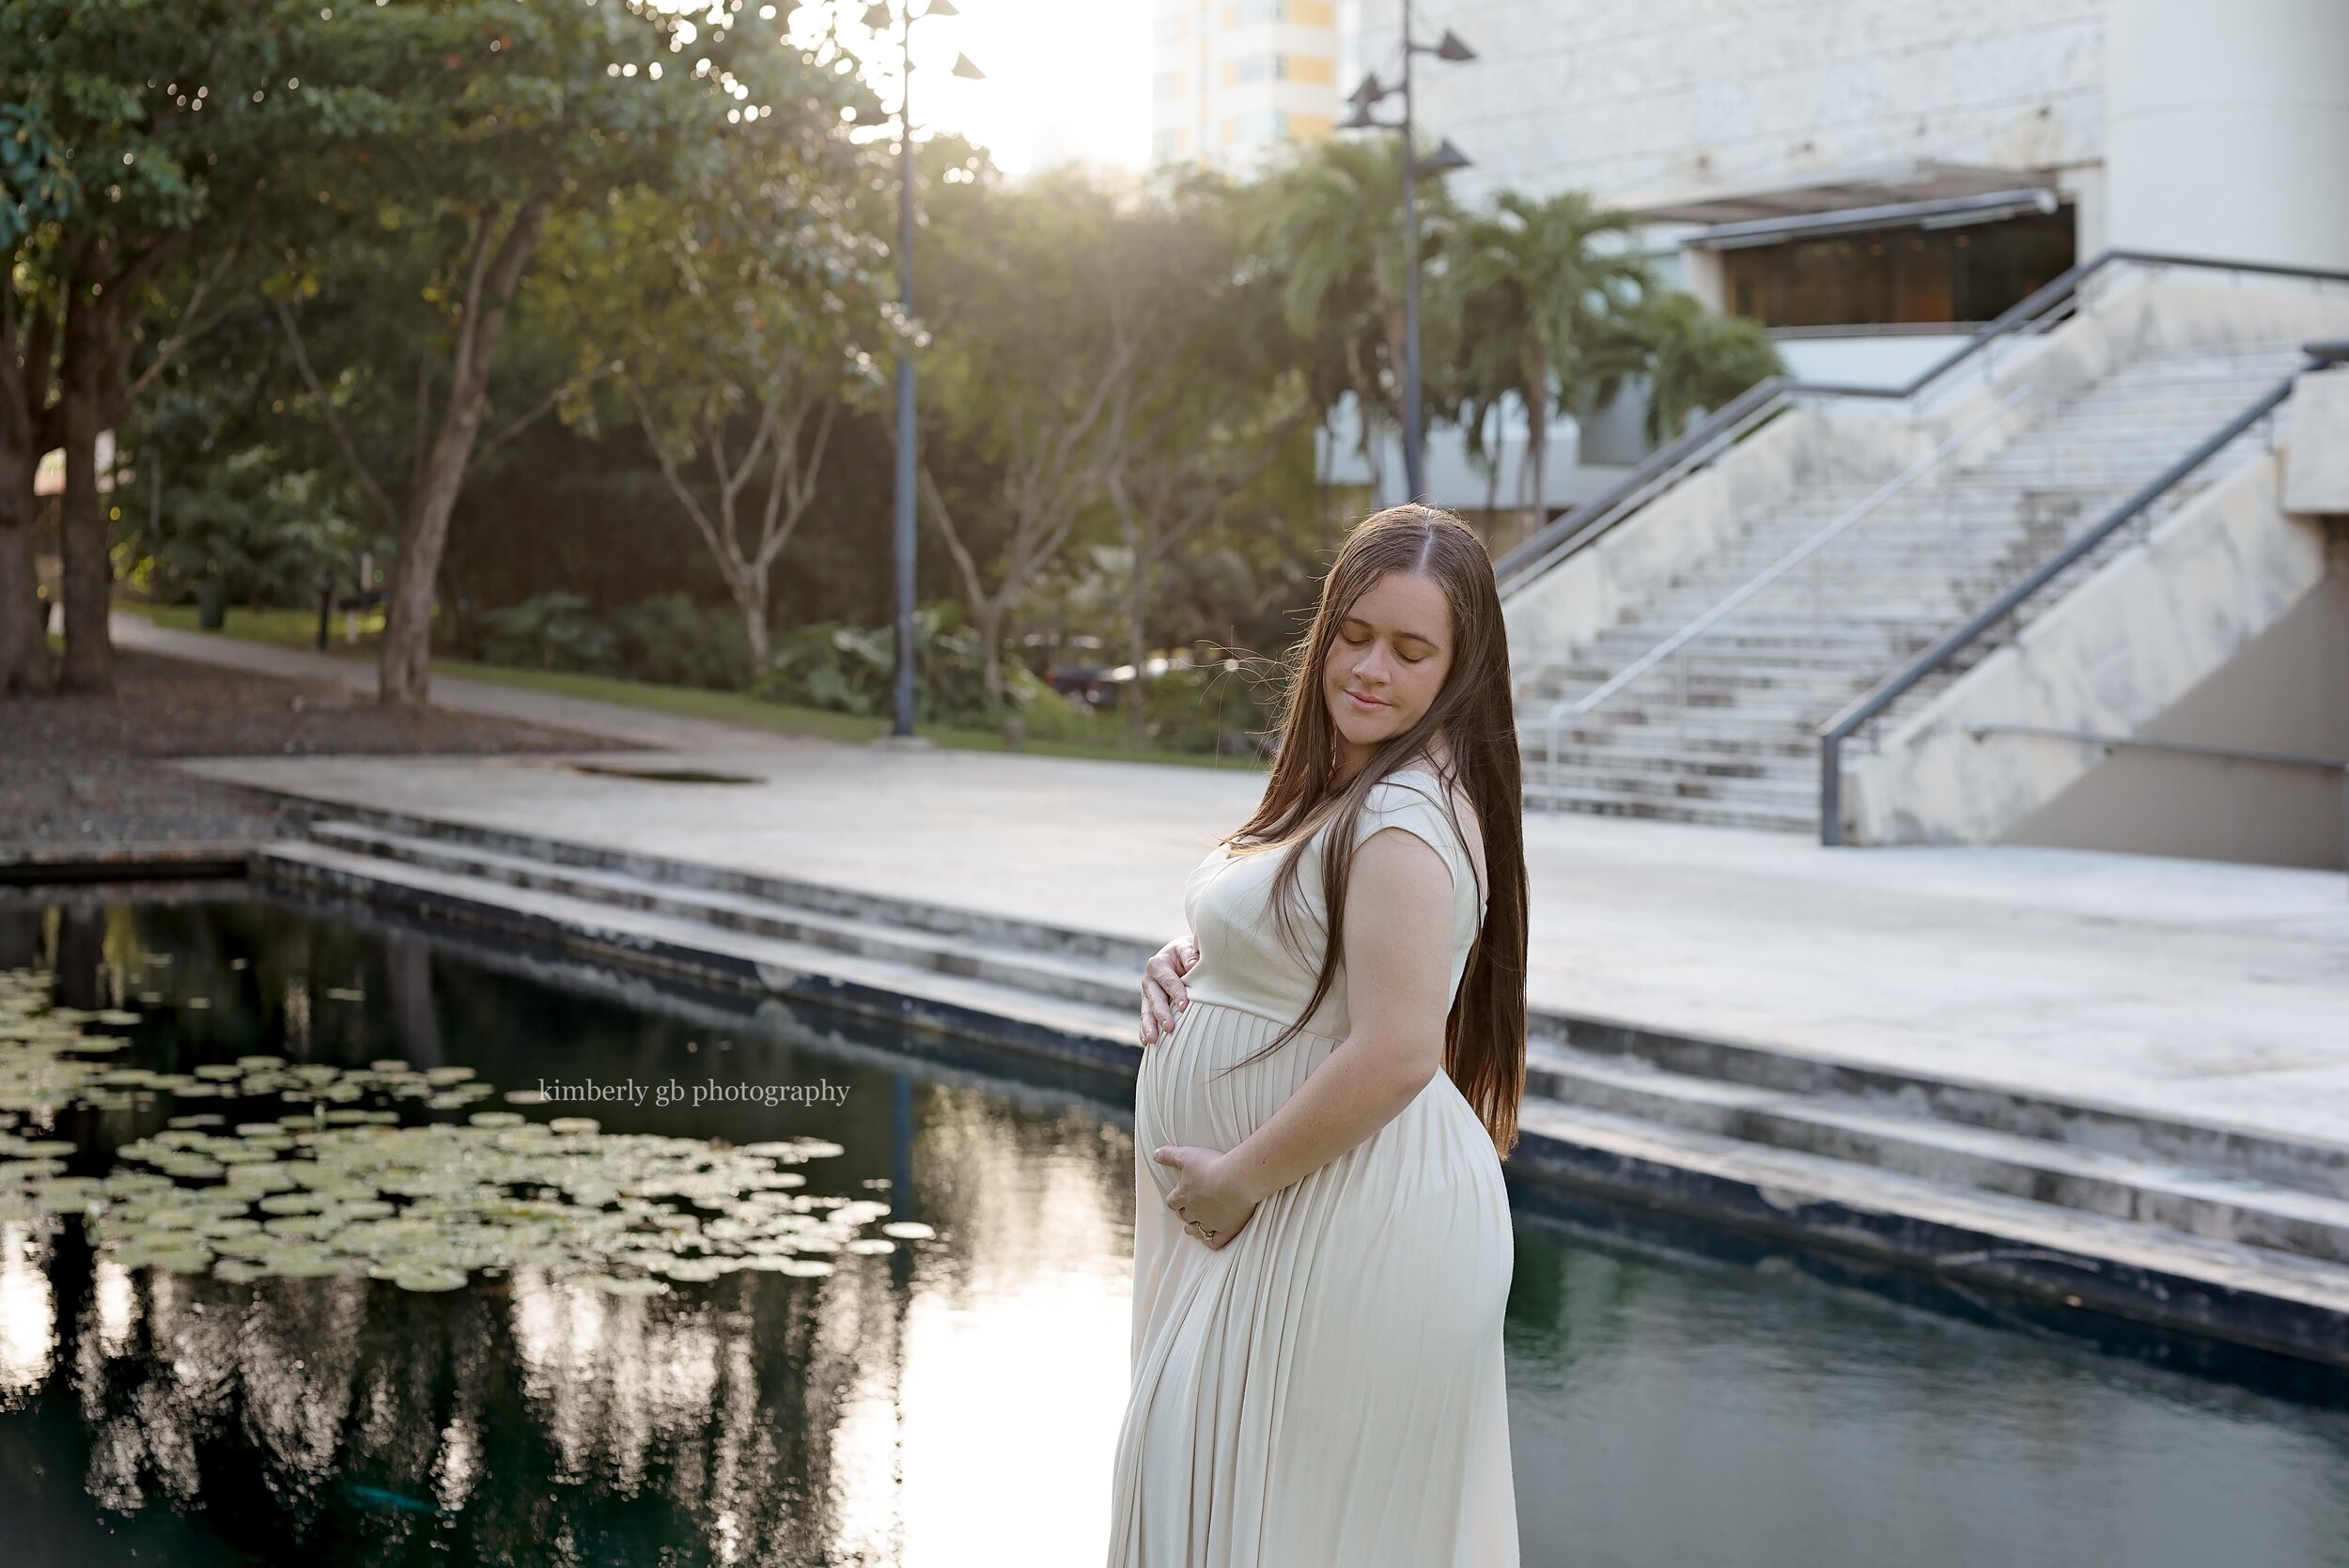 fotografia-fotografa-de-maternidad-embarazo-embarazada-en-puerto-rico-fotografia-177.jpg